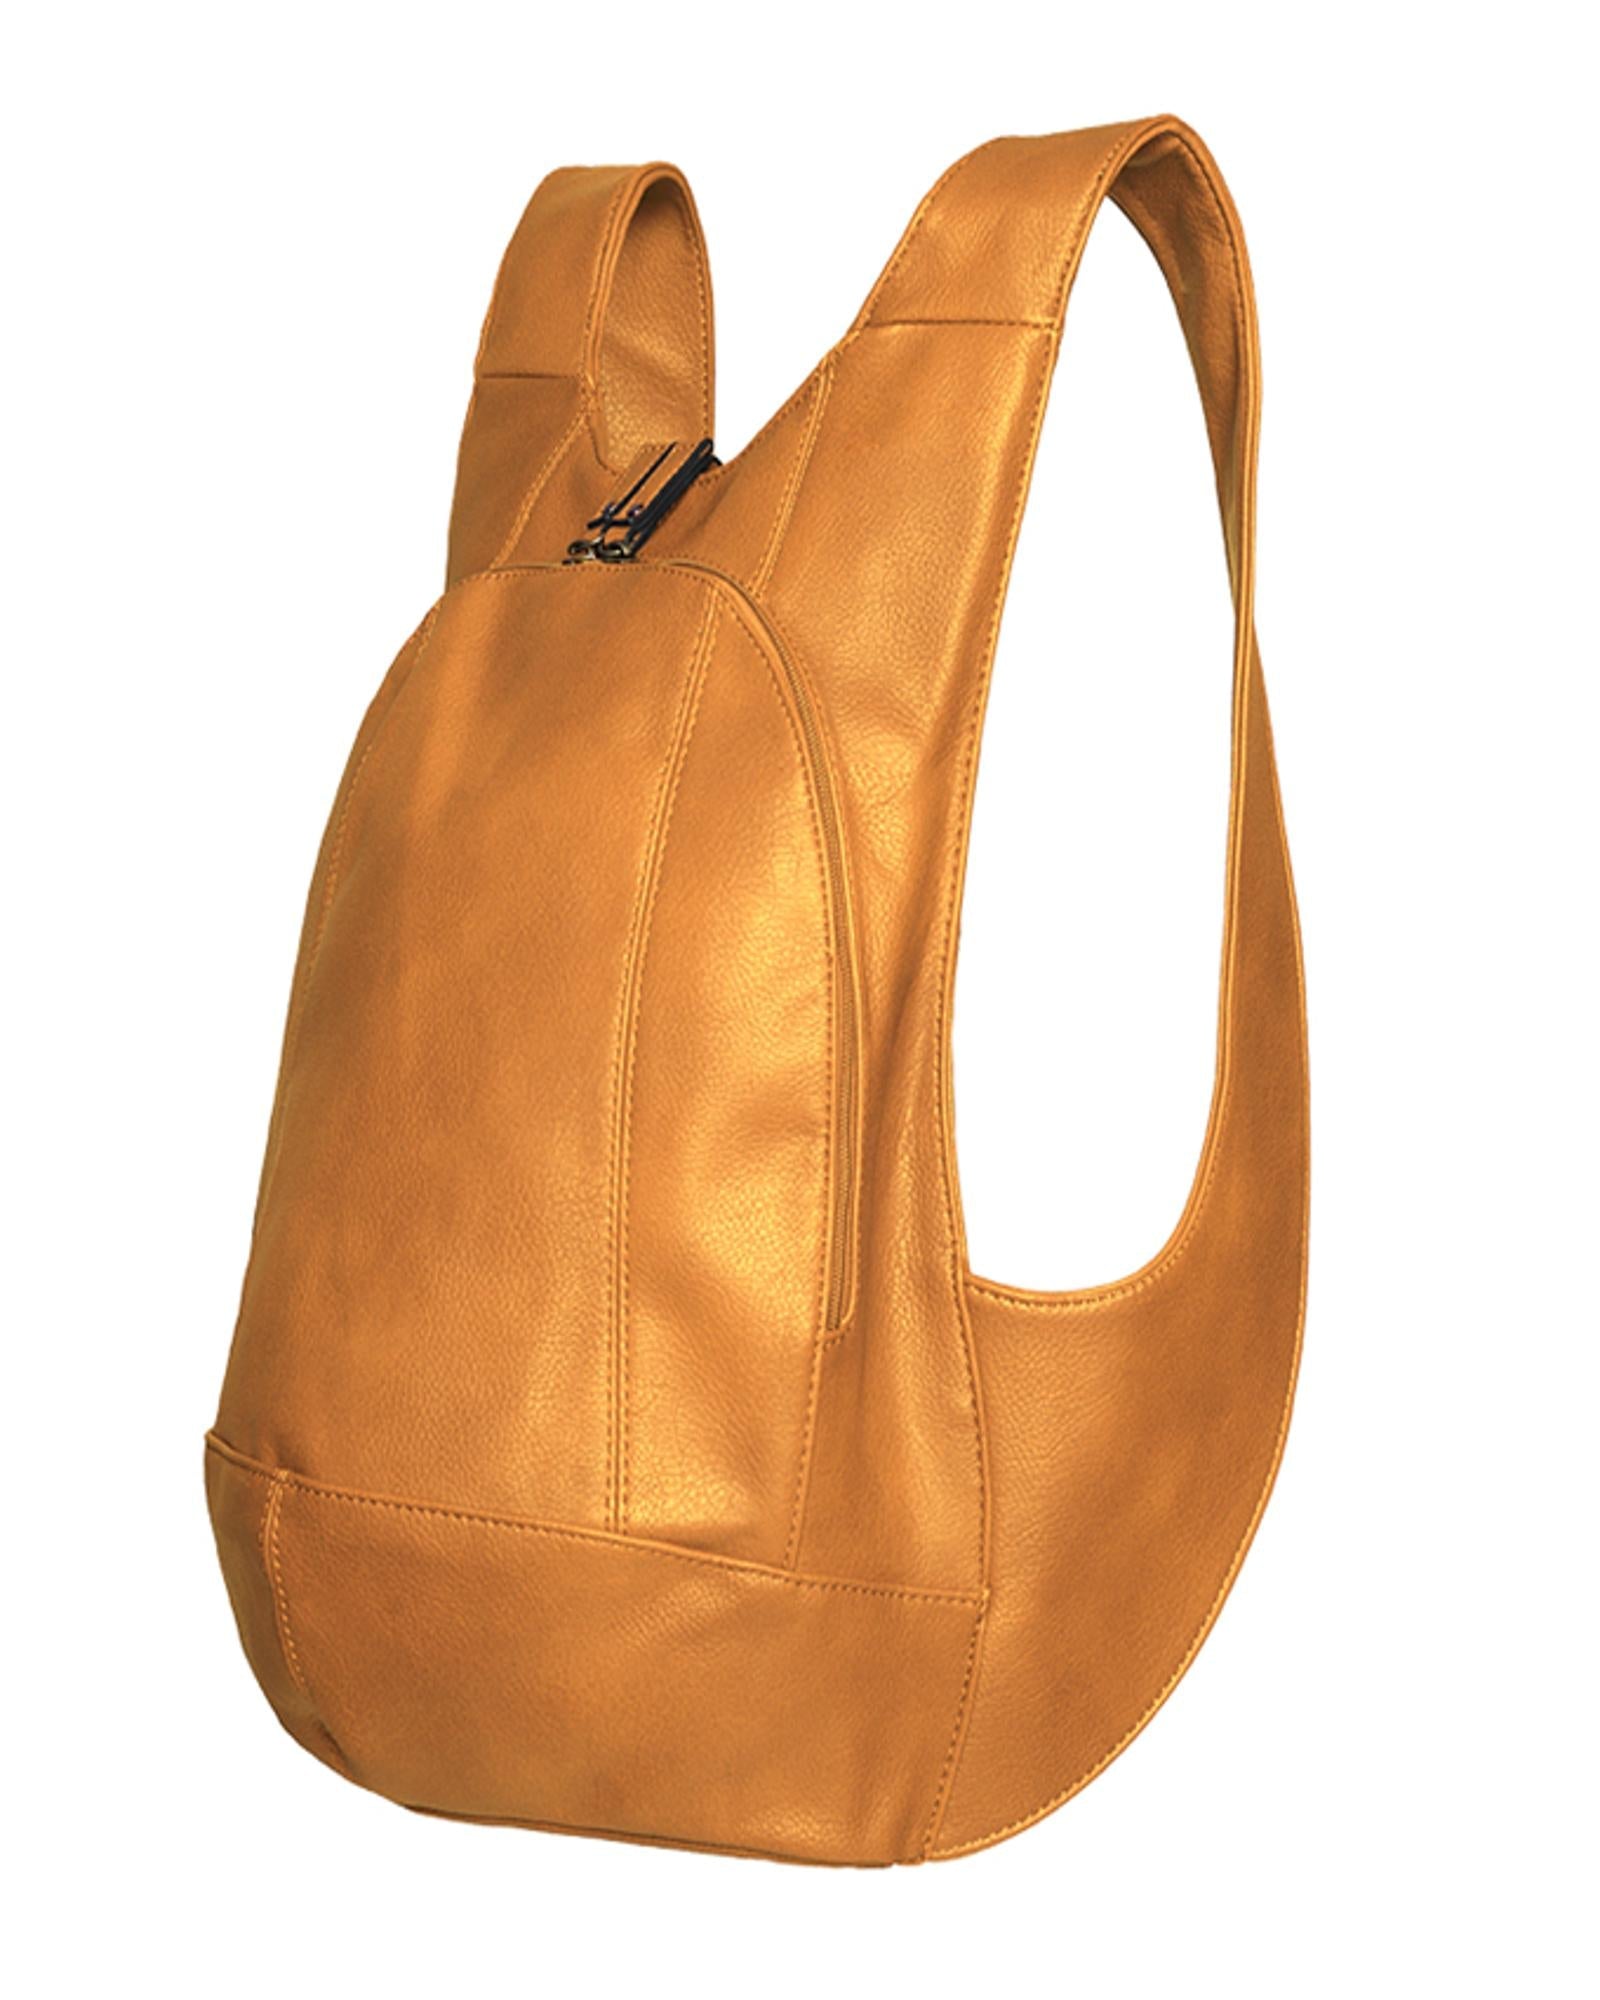 ARSAYO - ARSAYO Original Backpack | Yellow Mustard